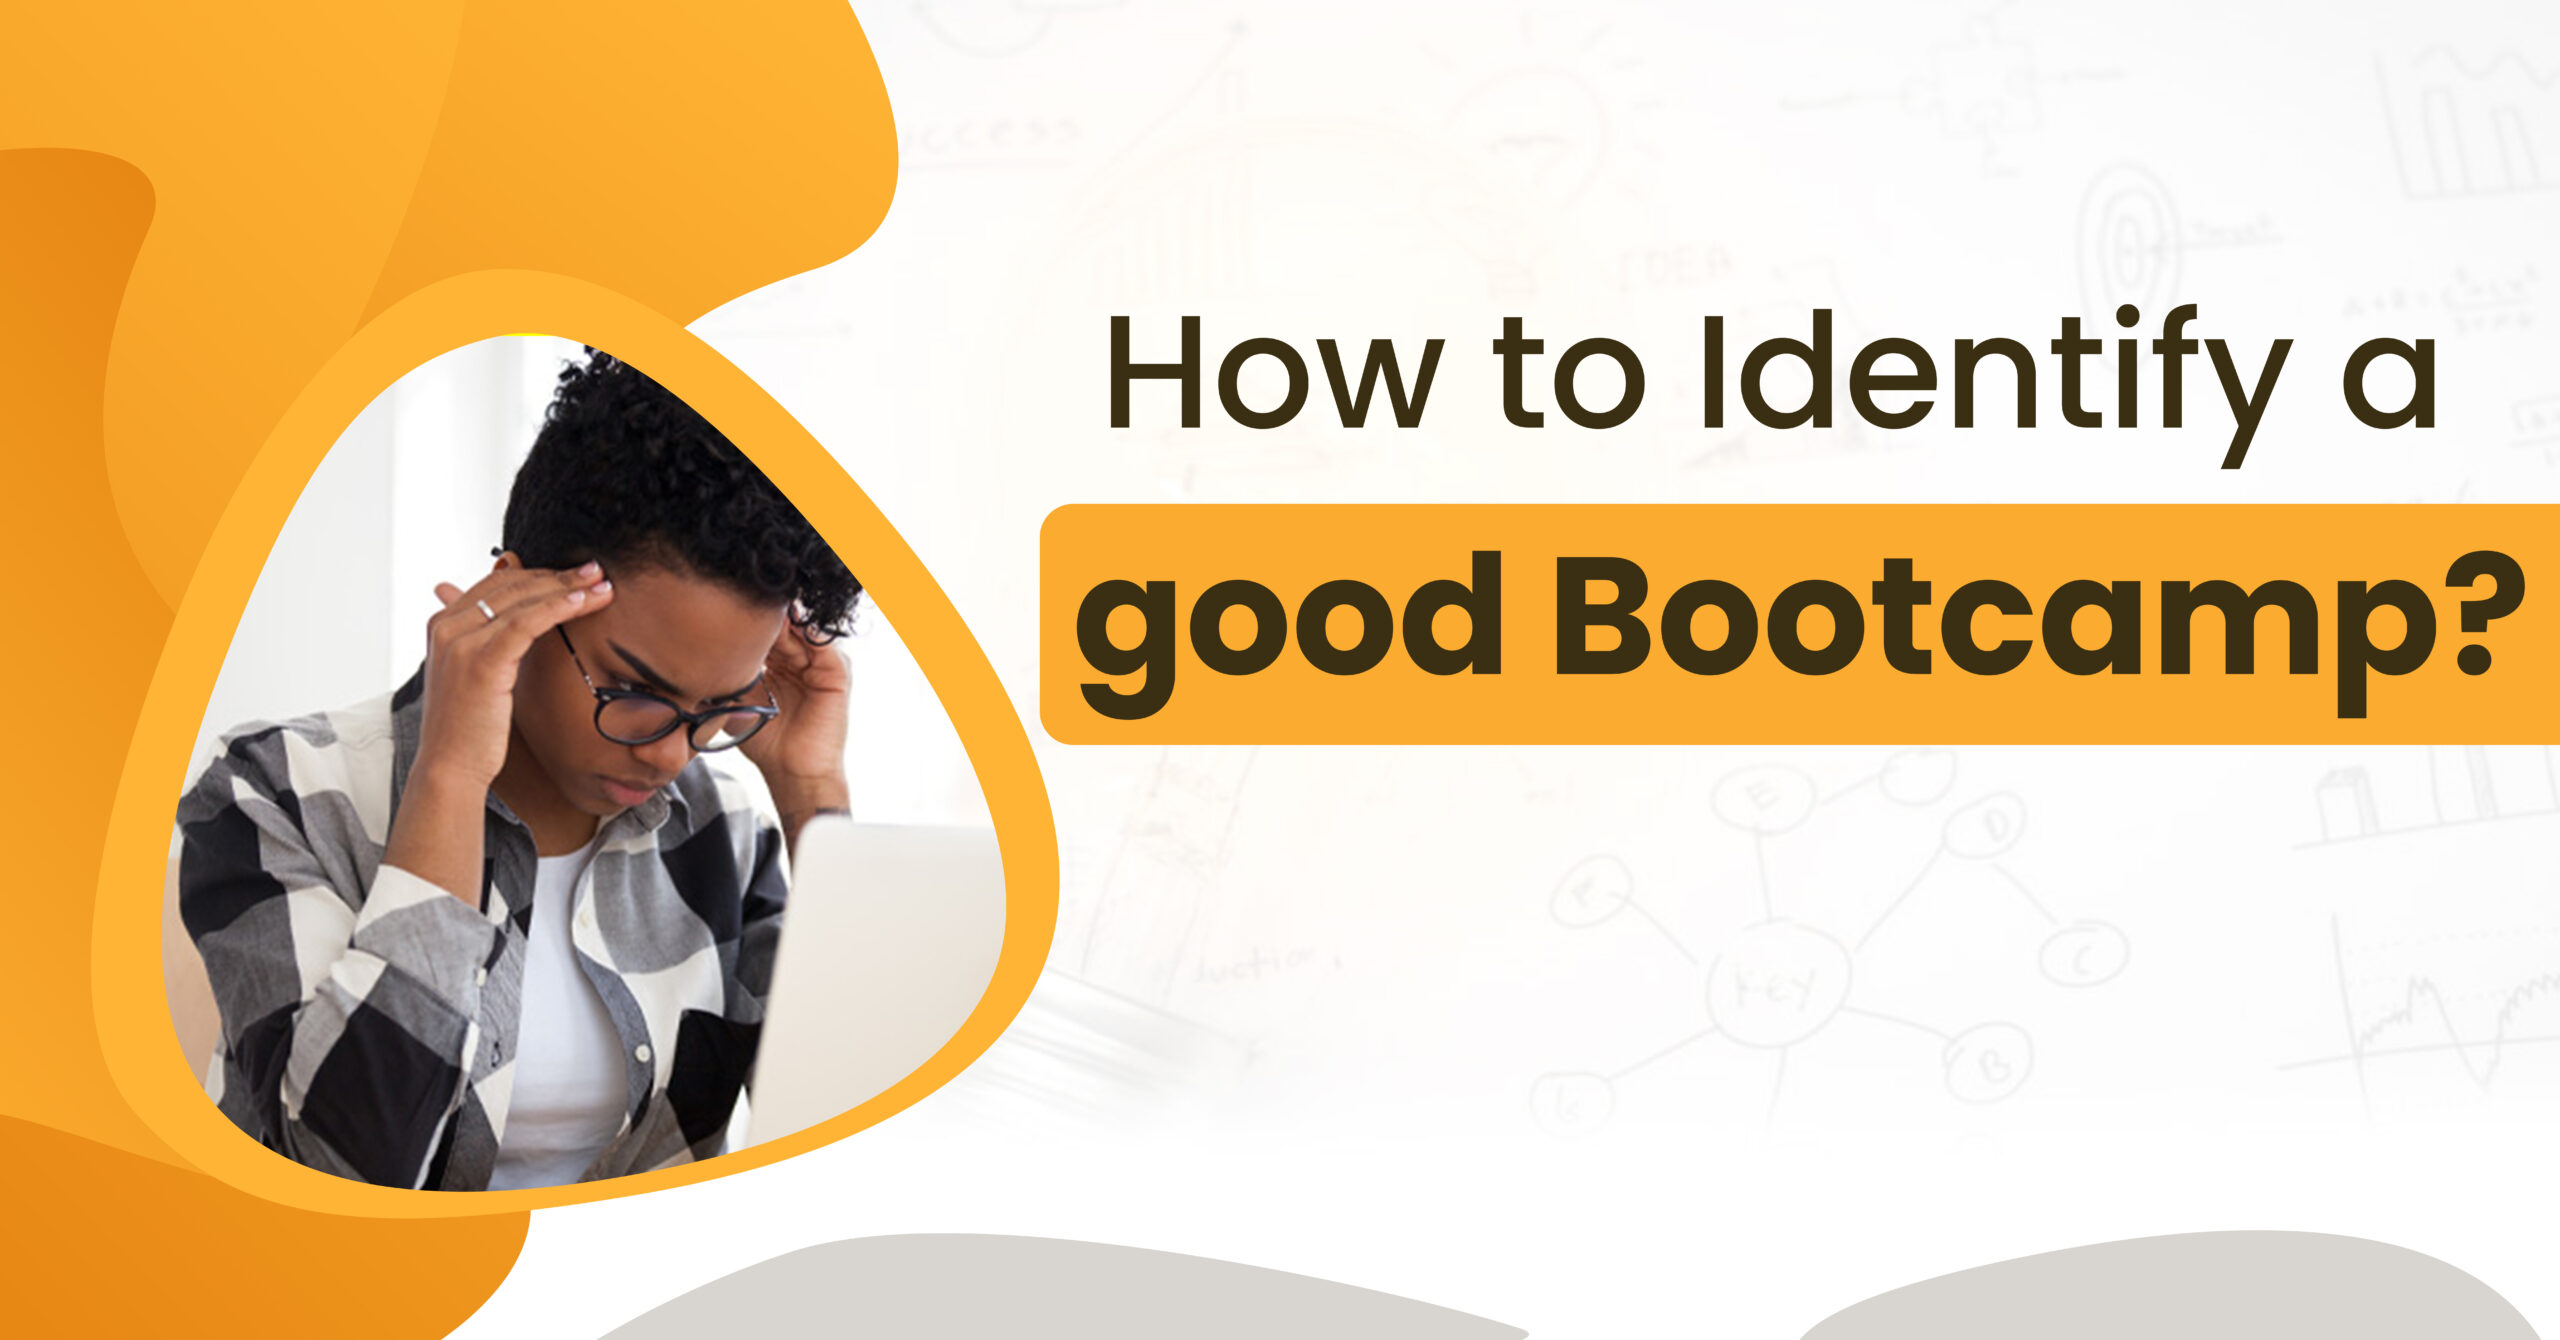  Identify a good Bootcamp